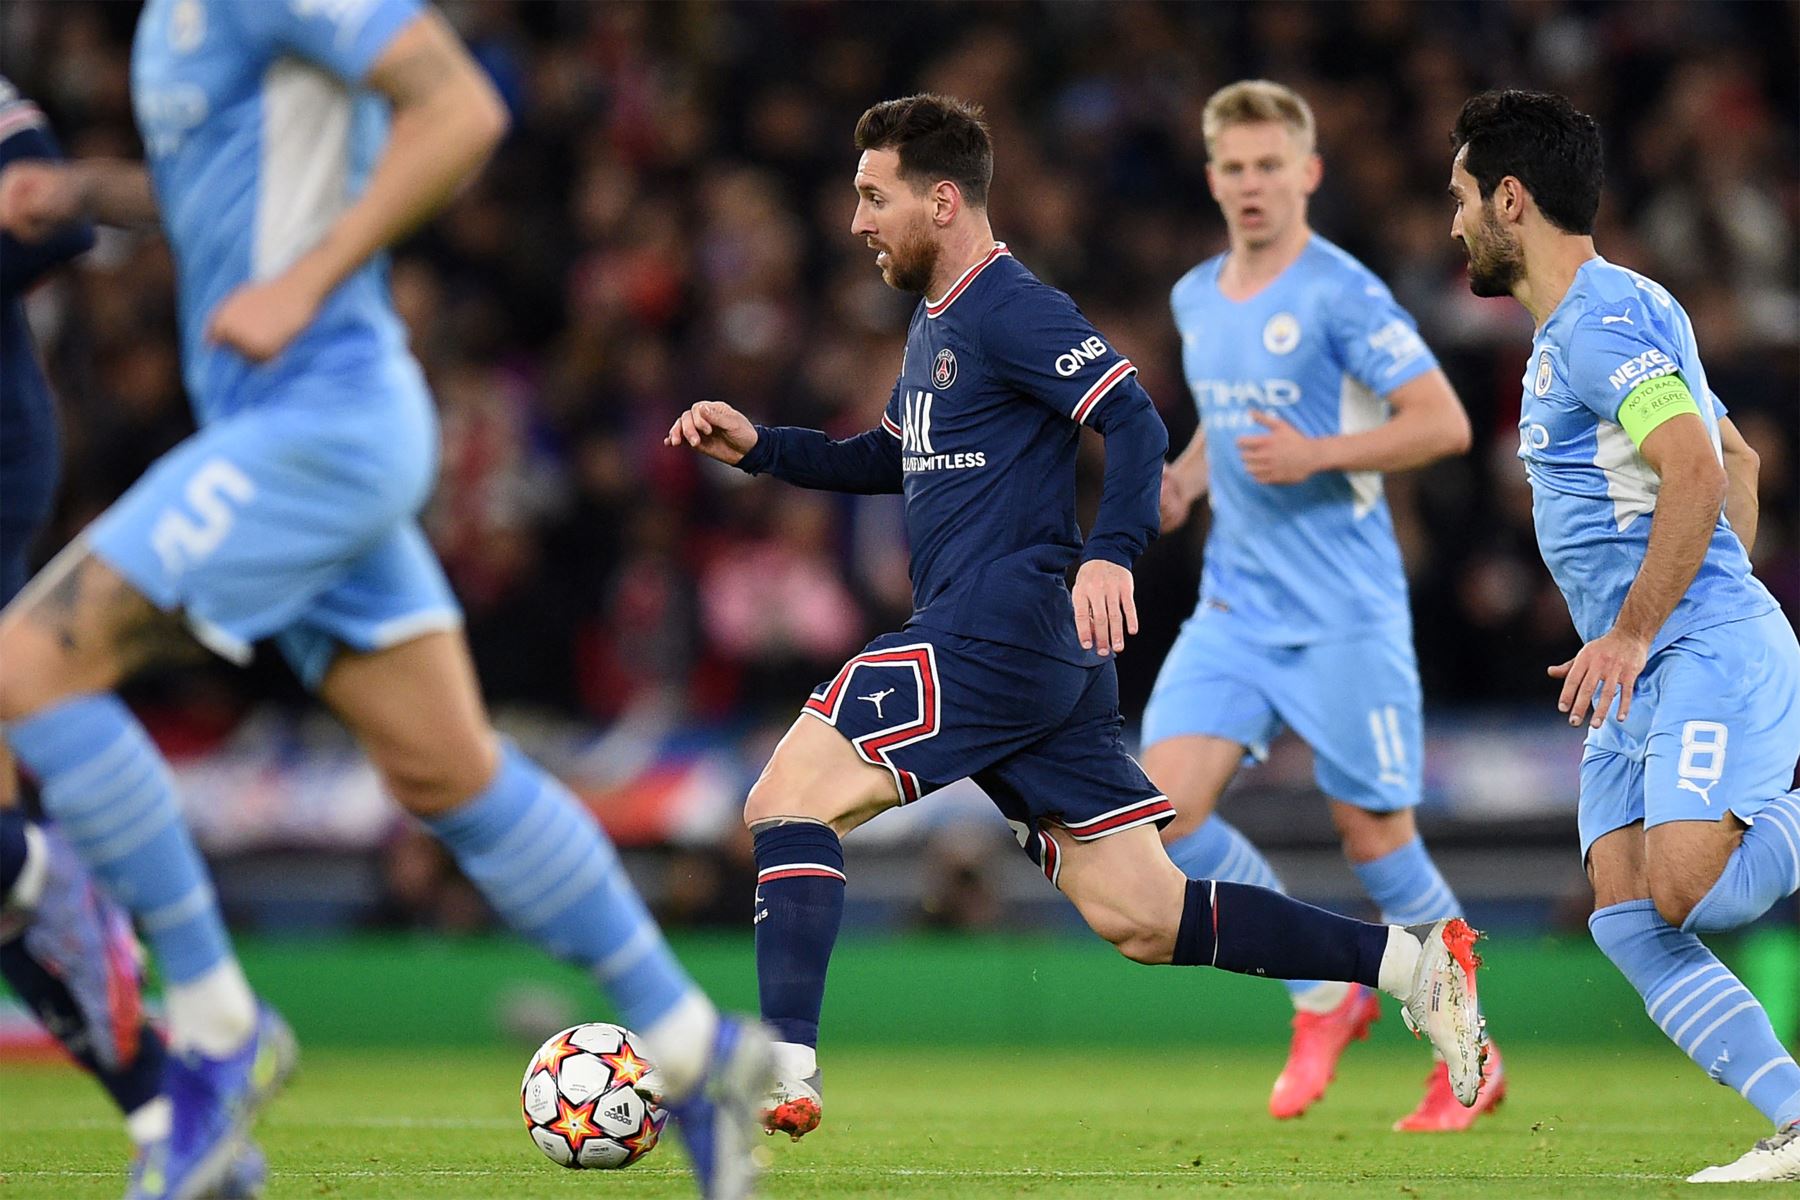 El delantero argentino del Paris Saint-Germain Lionel Messi corre con el balón durante el partido de fútbol del Grupo A de la Liga de Campeones de la UEFA entre el Manchester City y el Paris Saint-Germain en el Etihad Stadium de Manchester.
Foto: AFP